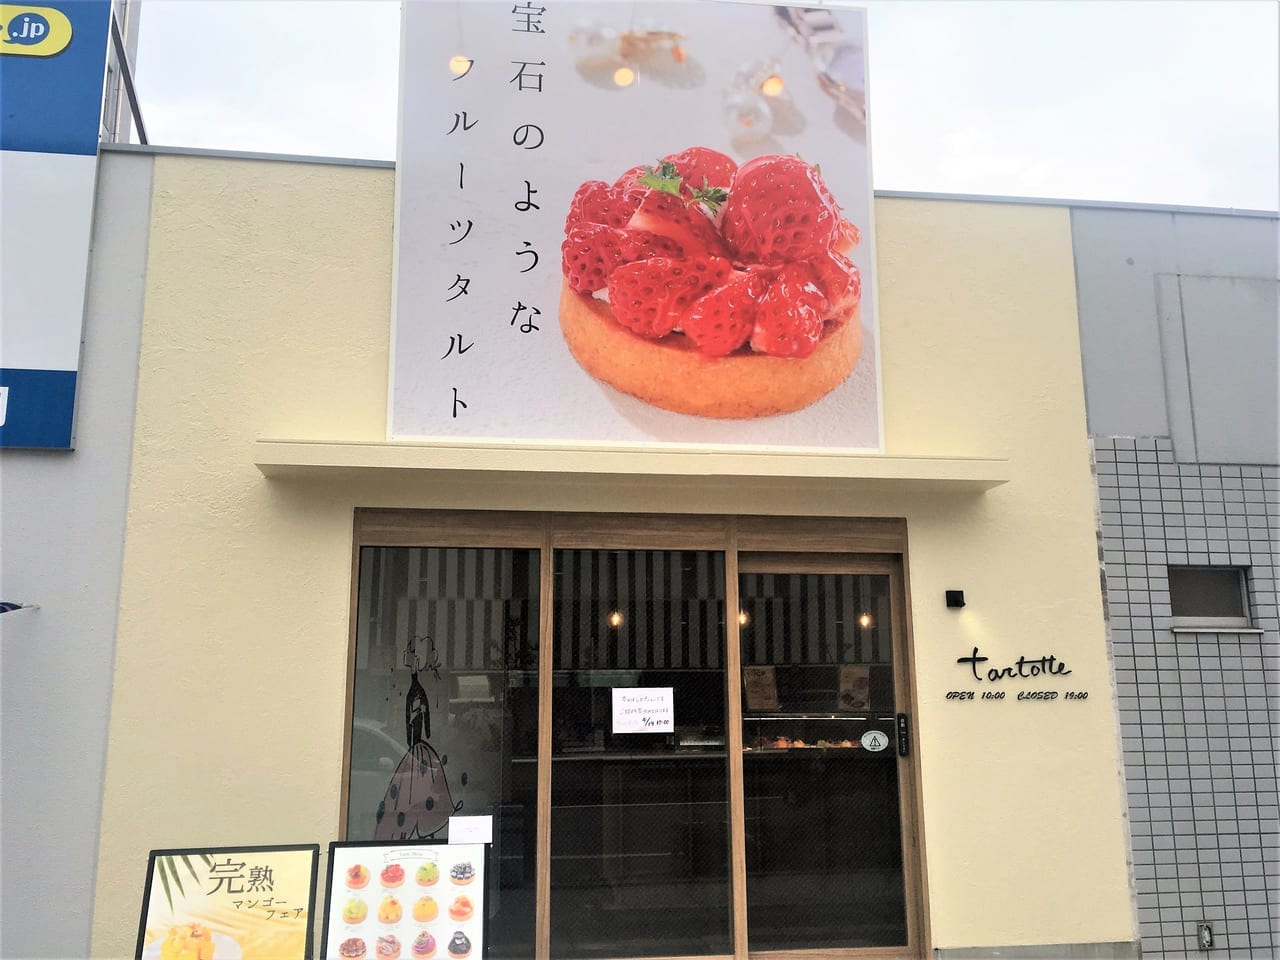 「宝石のようなフルーツタルトtartotte-タルトッテ-一宮駅前店」のオープンの写真